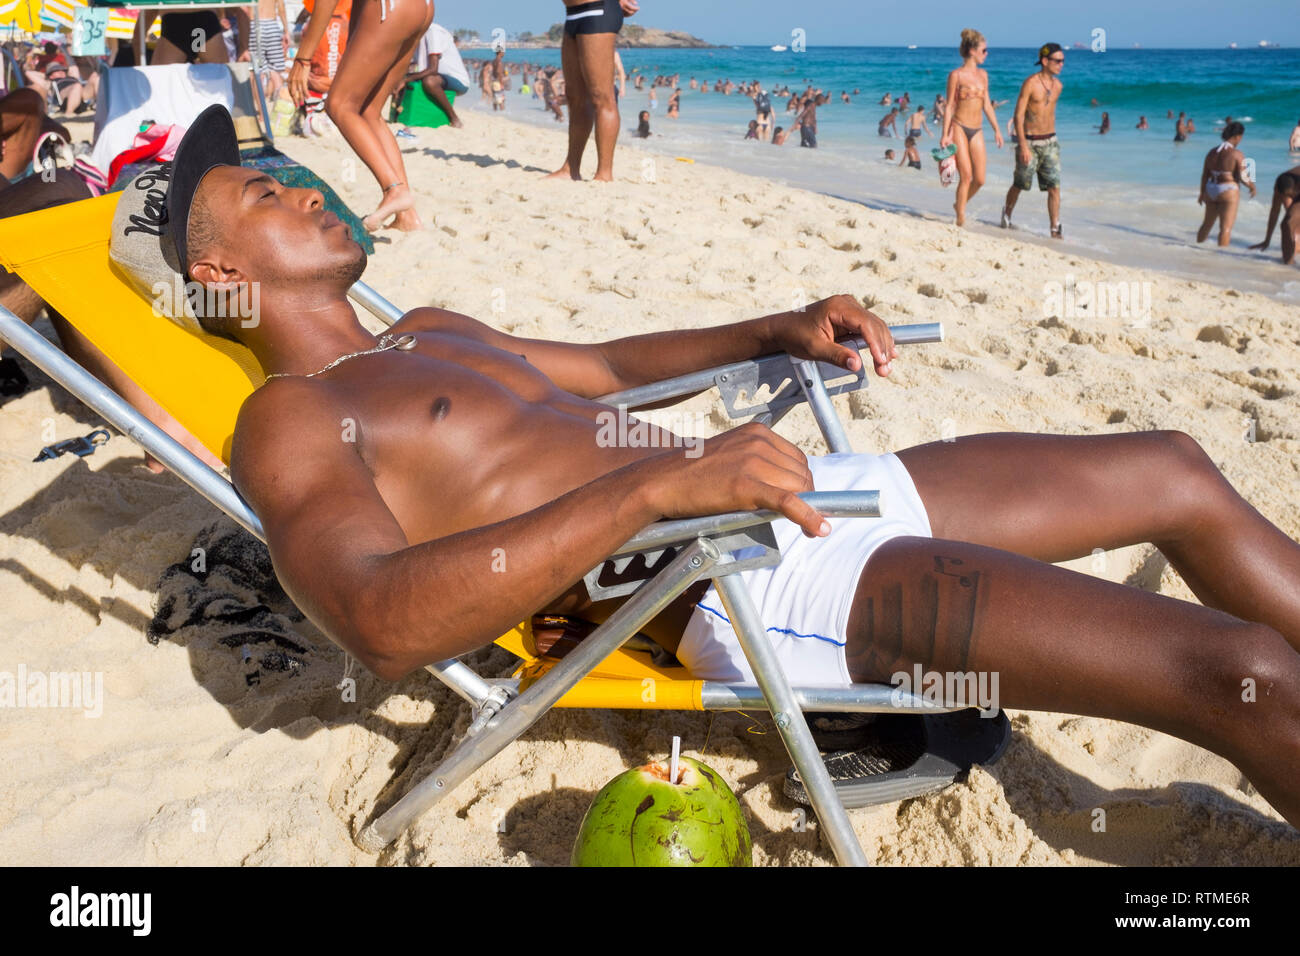 RIO DE JANEIRO - 25 de enero de 2015: una joven brasileña muscular hombre yace en una silla de playa tomando el sol en una tarde brillante en la playa de Ipanema. Foto de stock